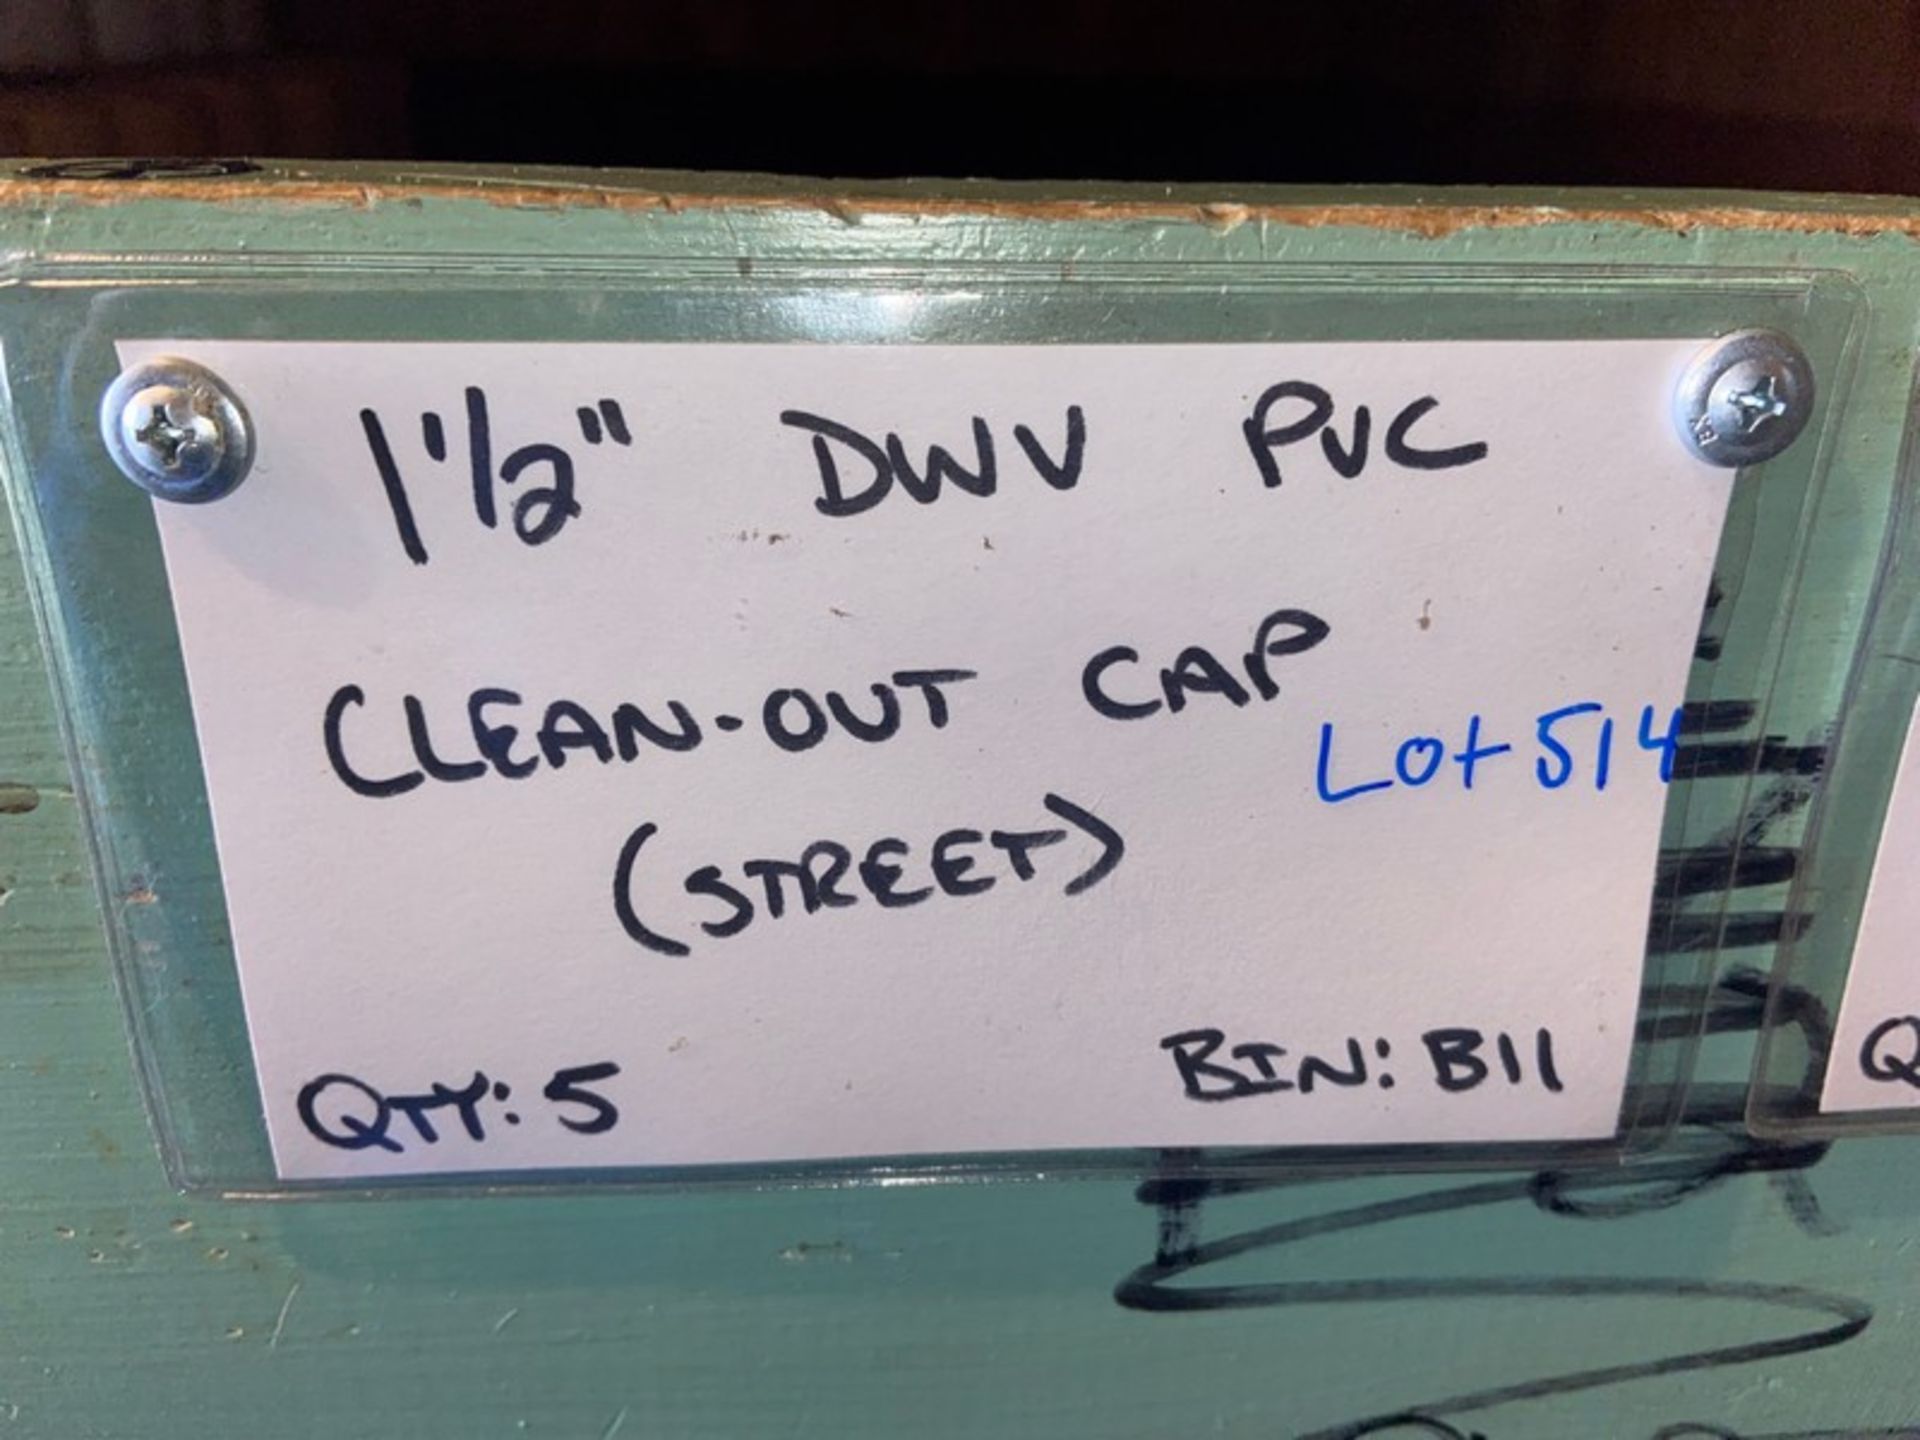 (5) 1 1/2” DWV PVC Clean-out CAP (STREET) (Bin: B11), Includes (23) 1 1/2” DWV PVC Clean-out CAP ( - Bild 8 aus 9